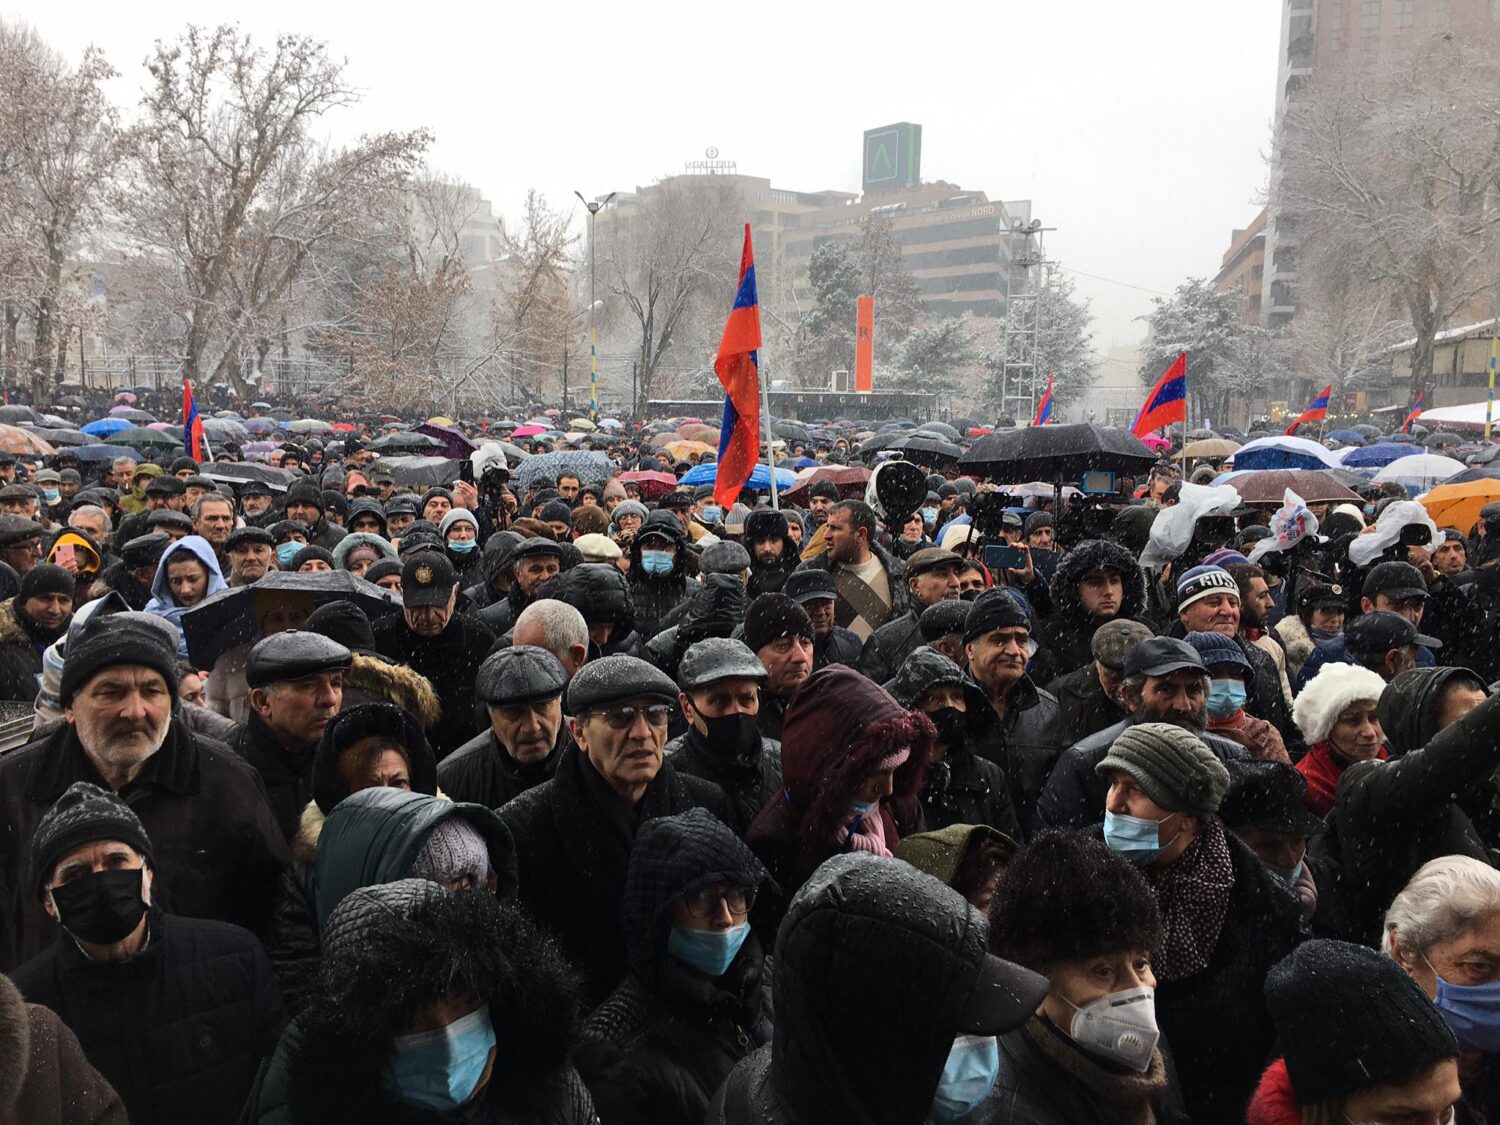 Այսպես սկսվեց «Ղարաբաղյան շարժումը». Ազատության հրապարակը լեփ-լեցուն է(լուսանկարներ)